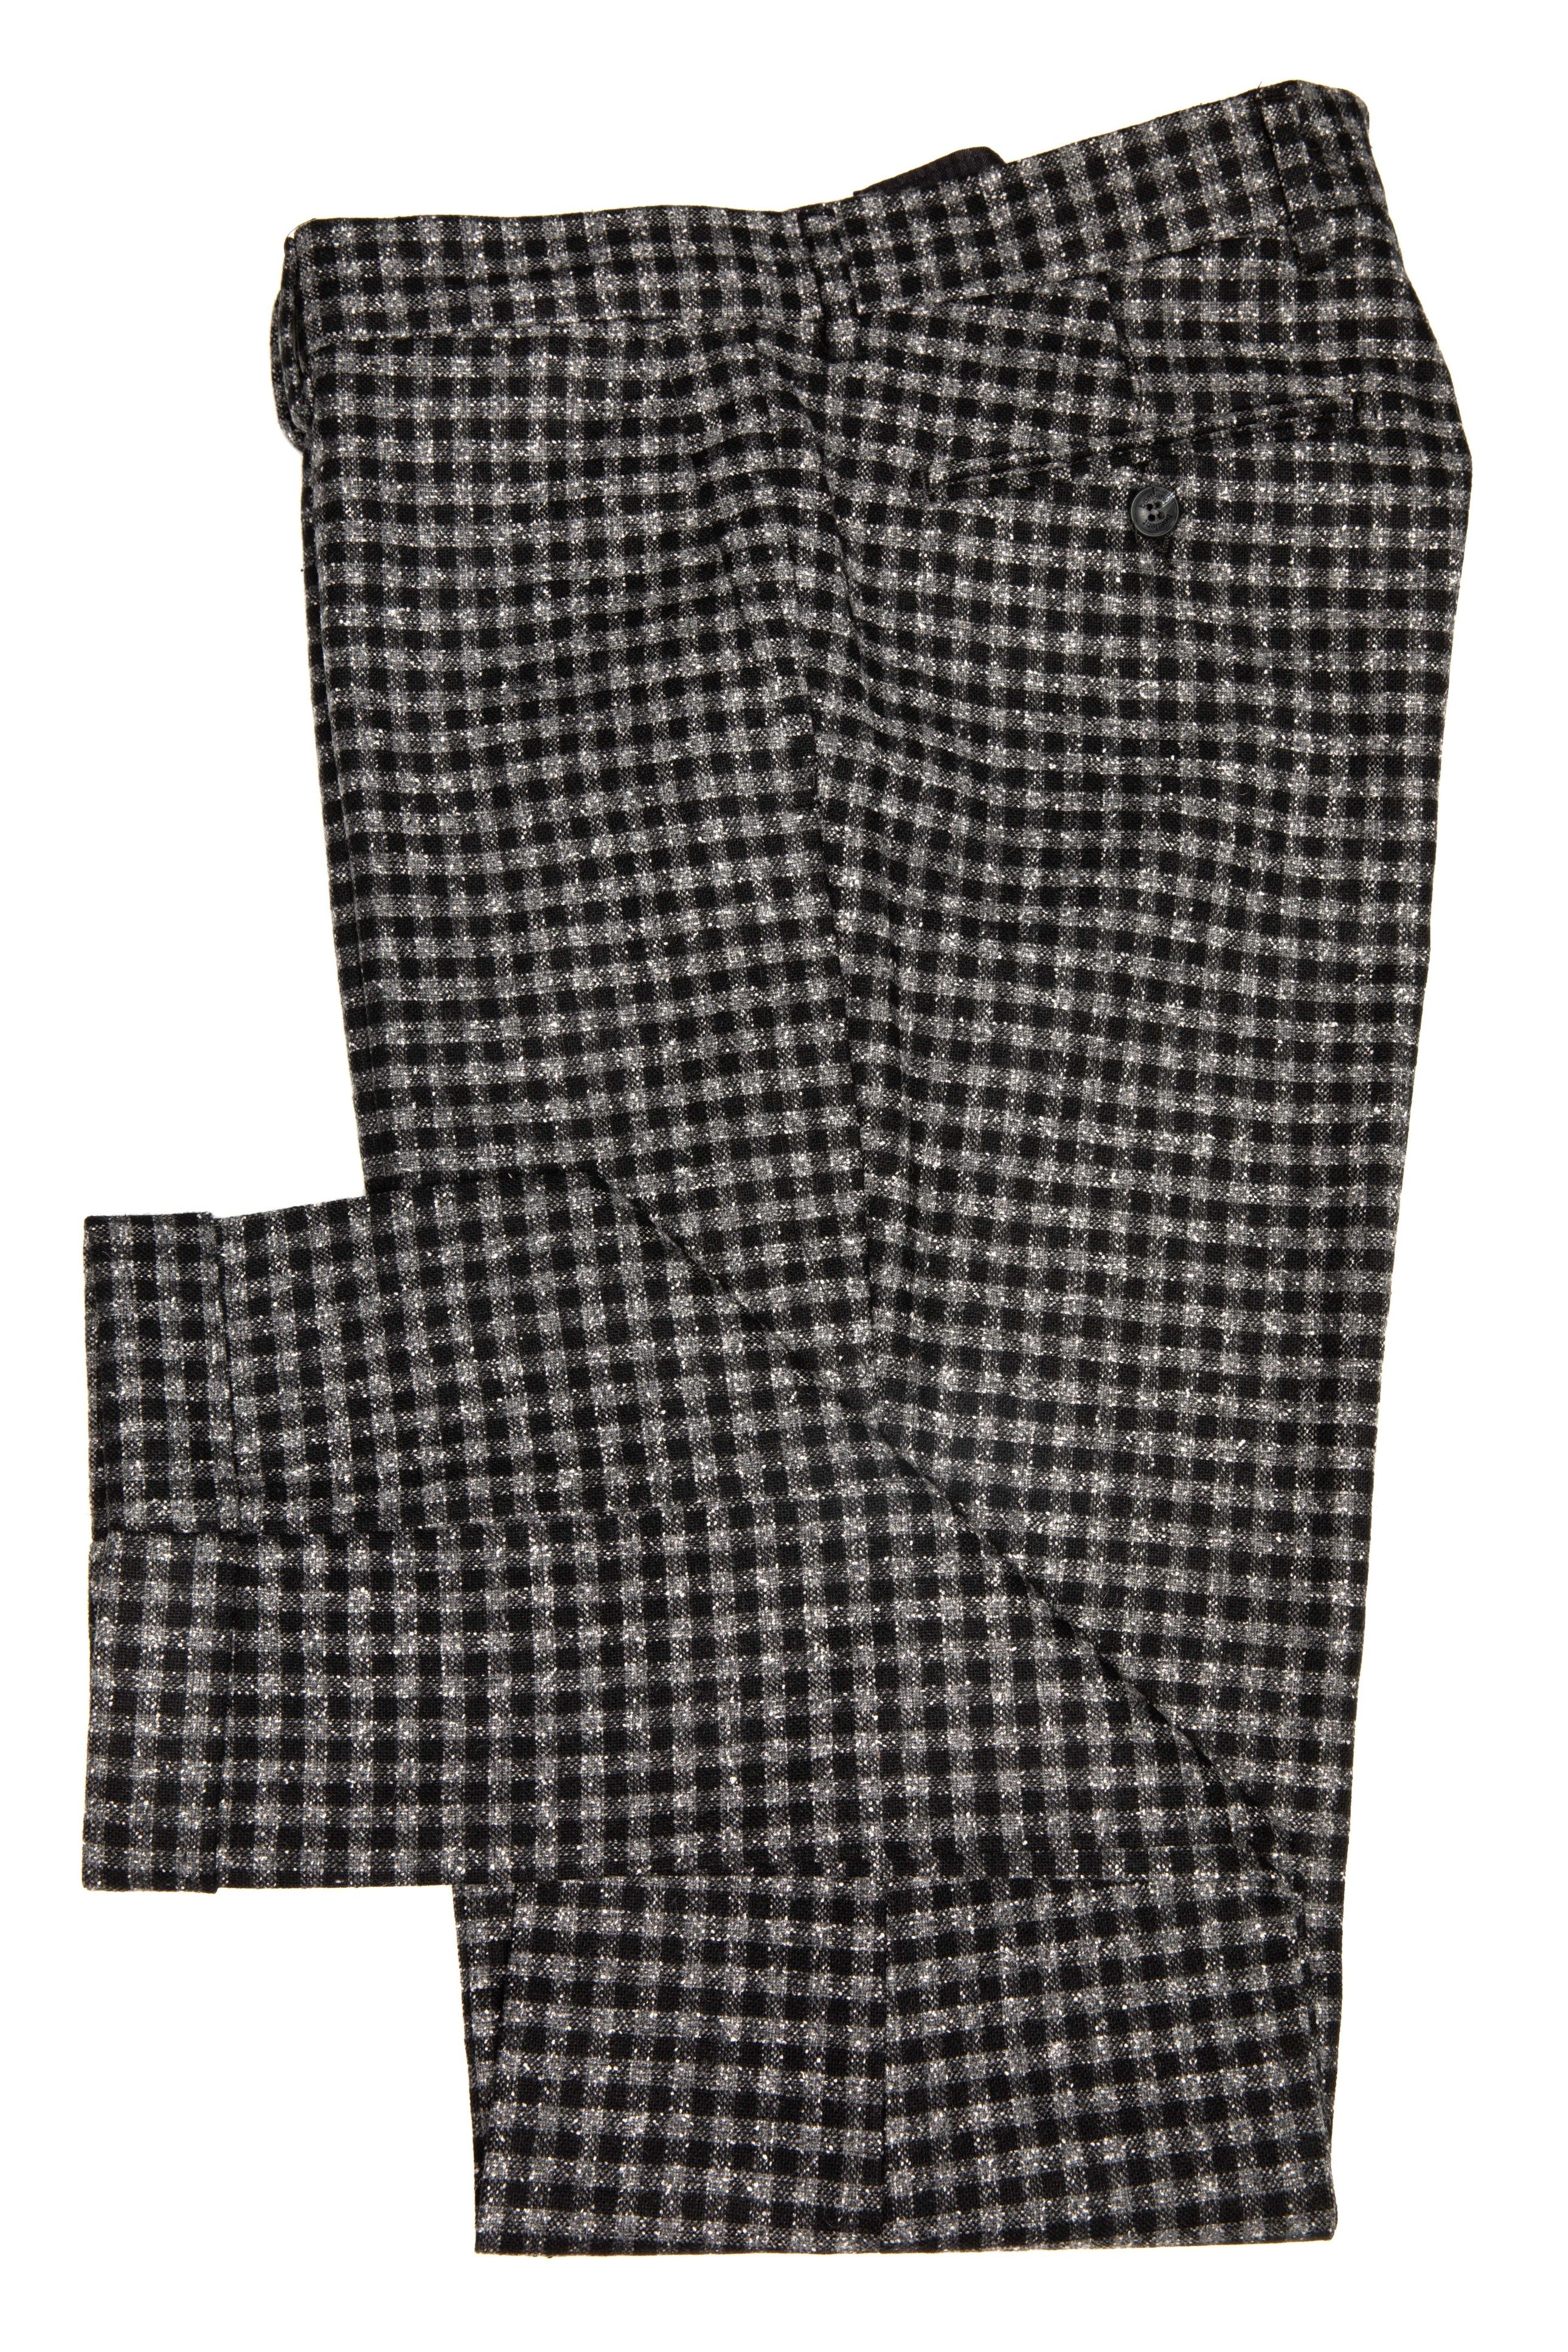 Pantaloni casual grigi con piccoli quadri neri